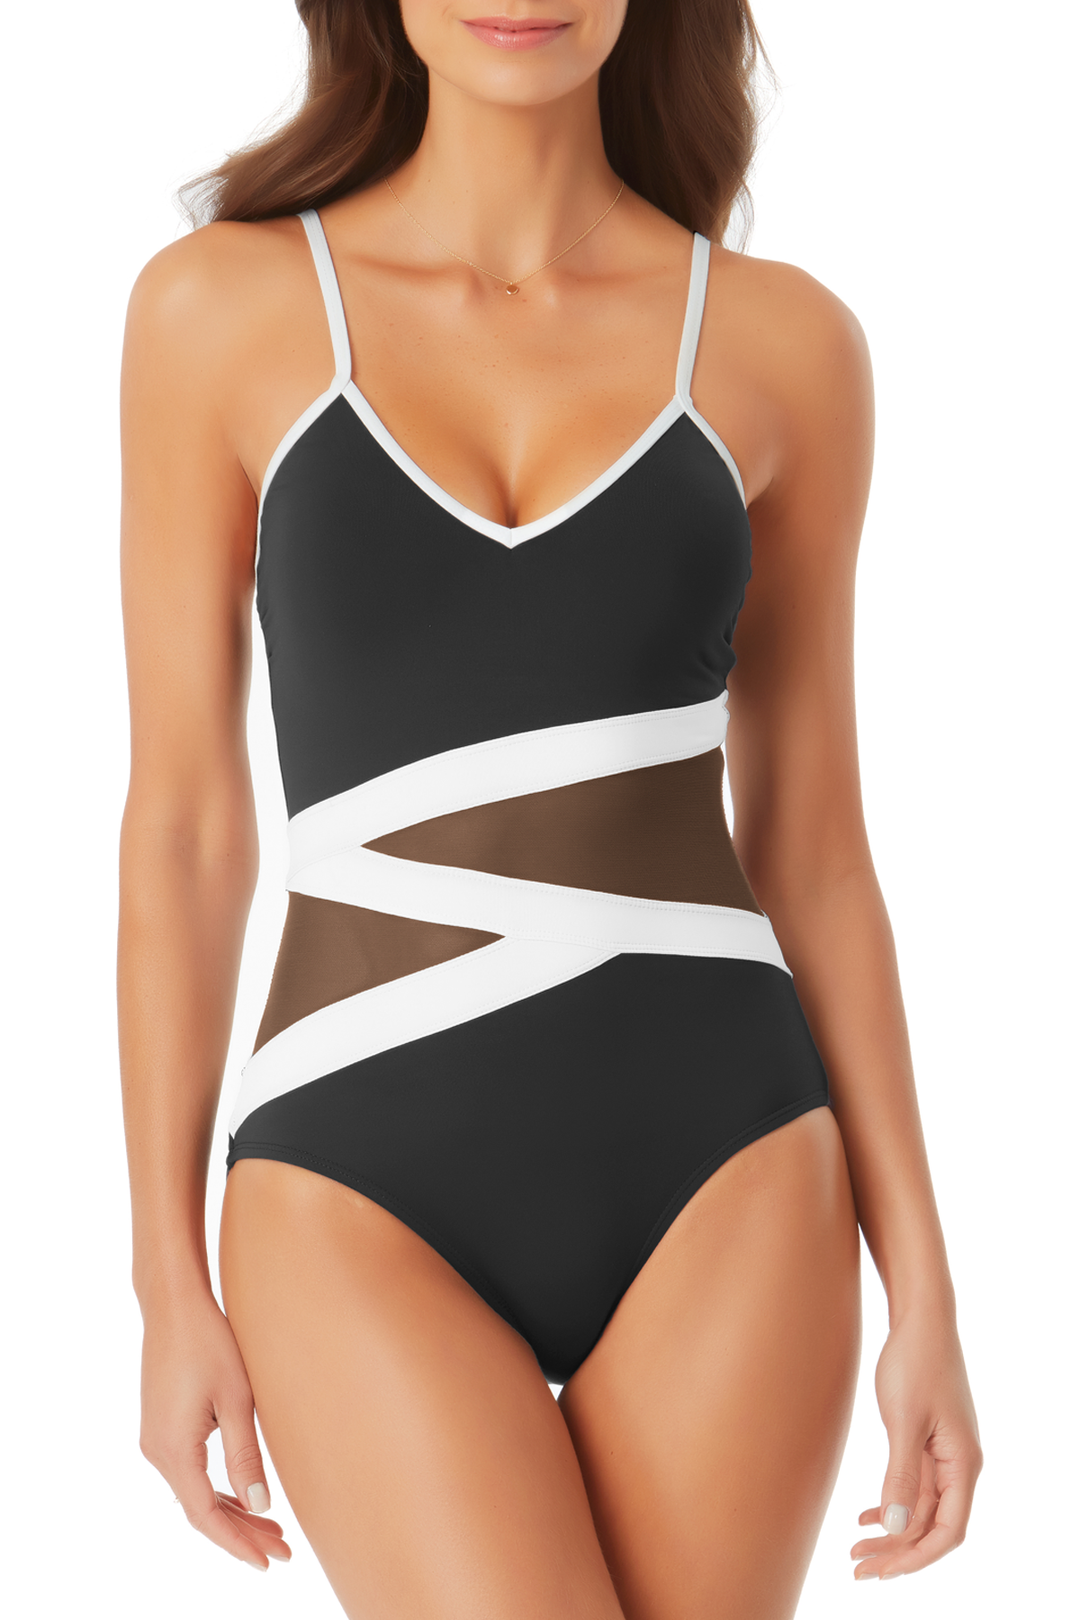 Lucky Brand Sahara Swimwear Bottom - Women's Swimwear in Black